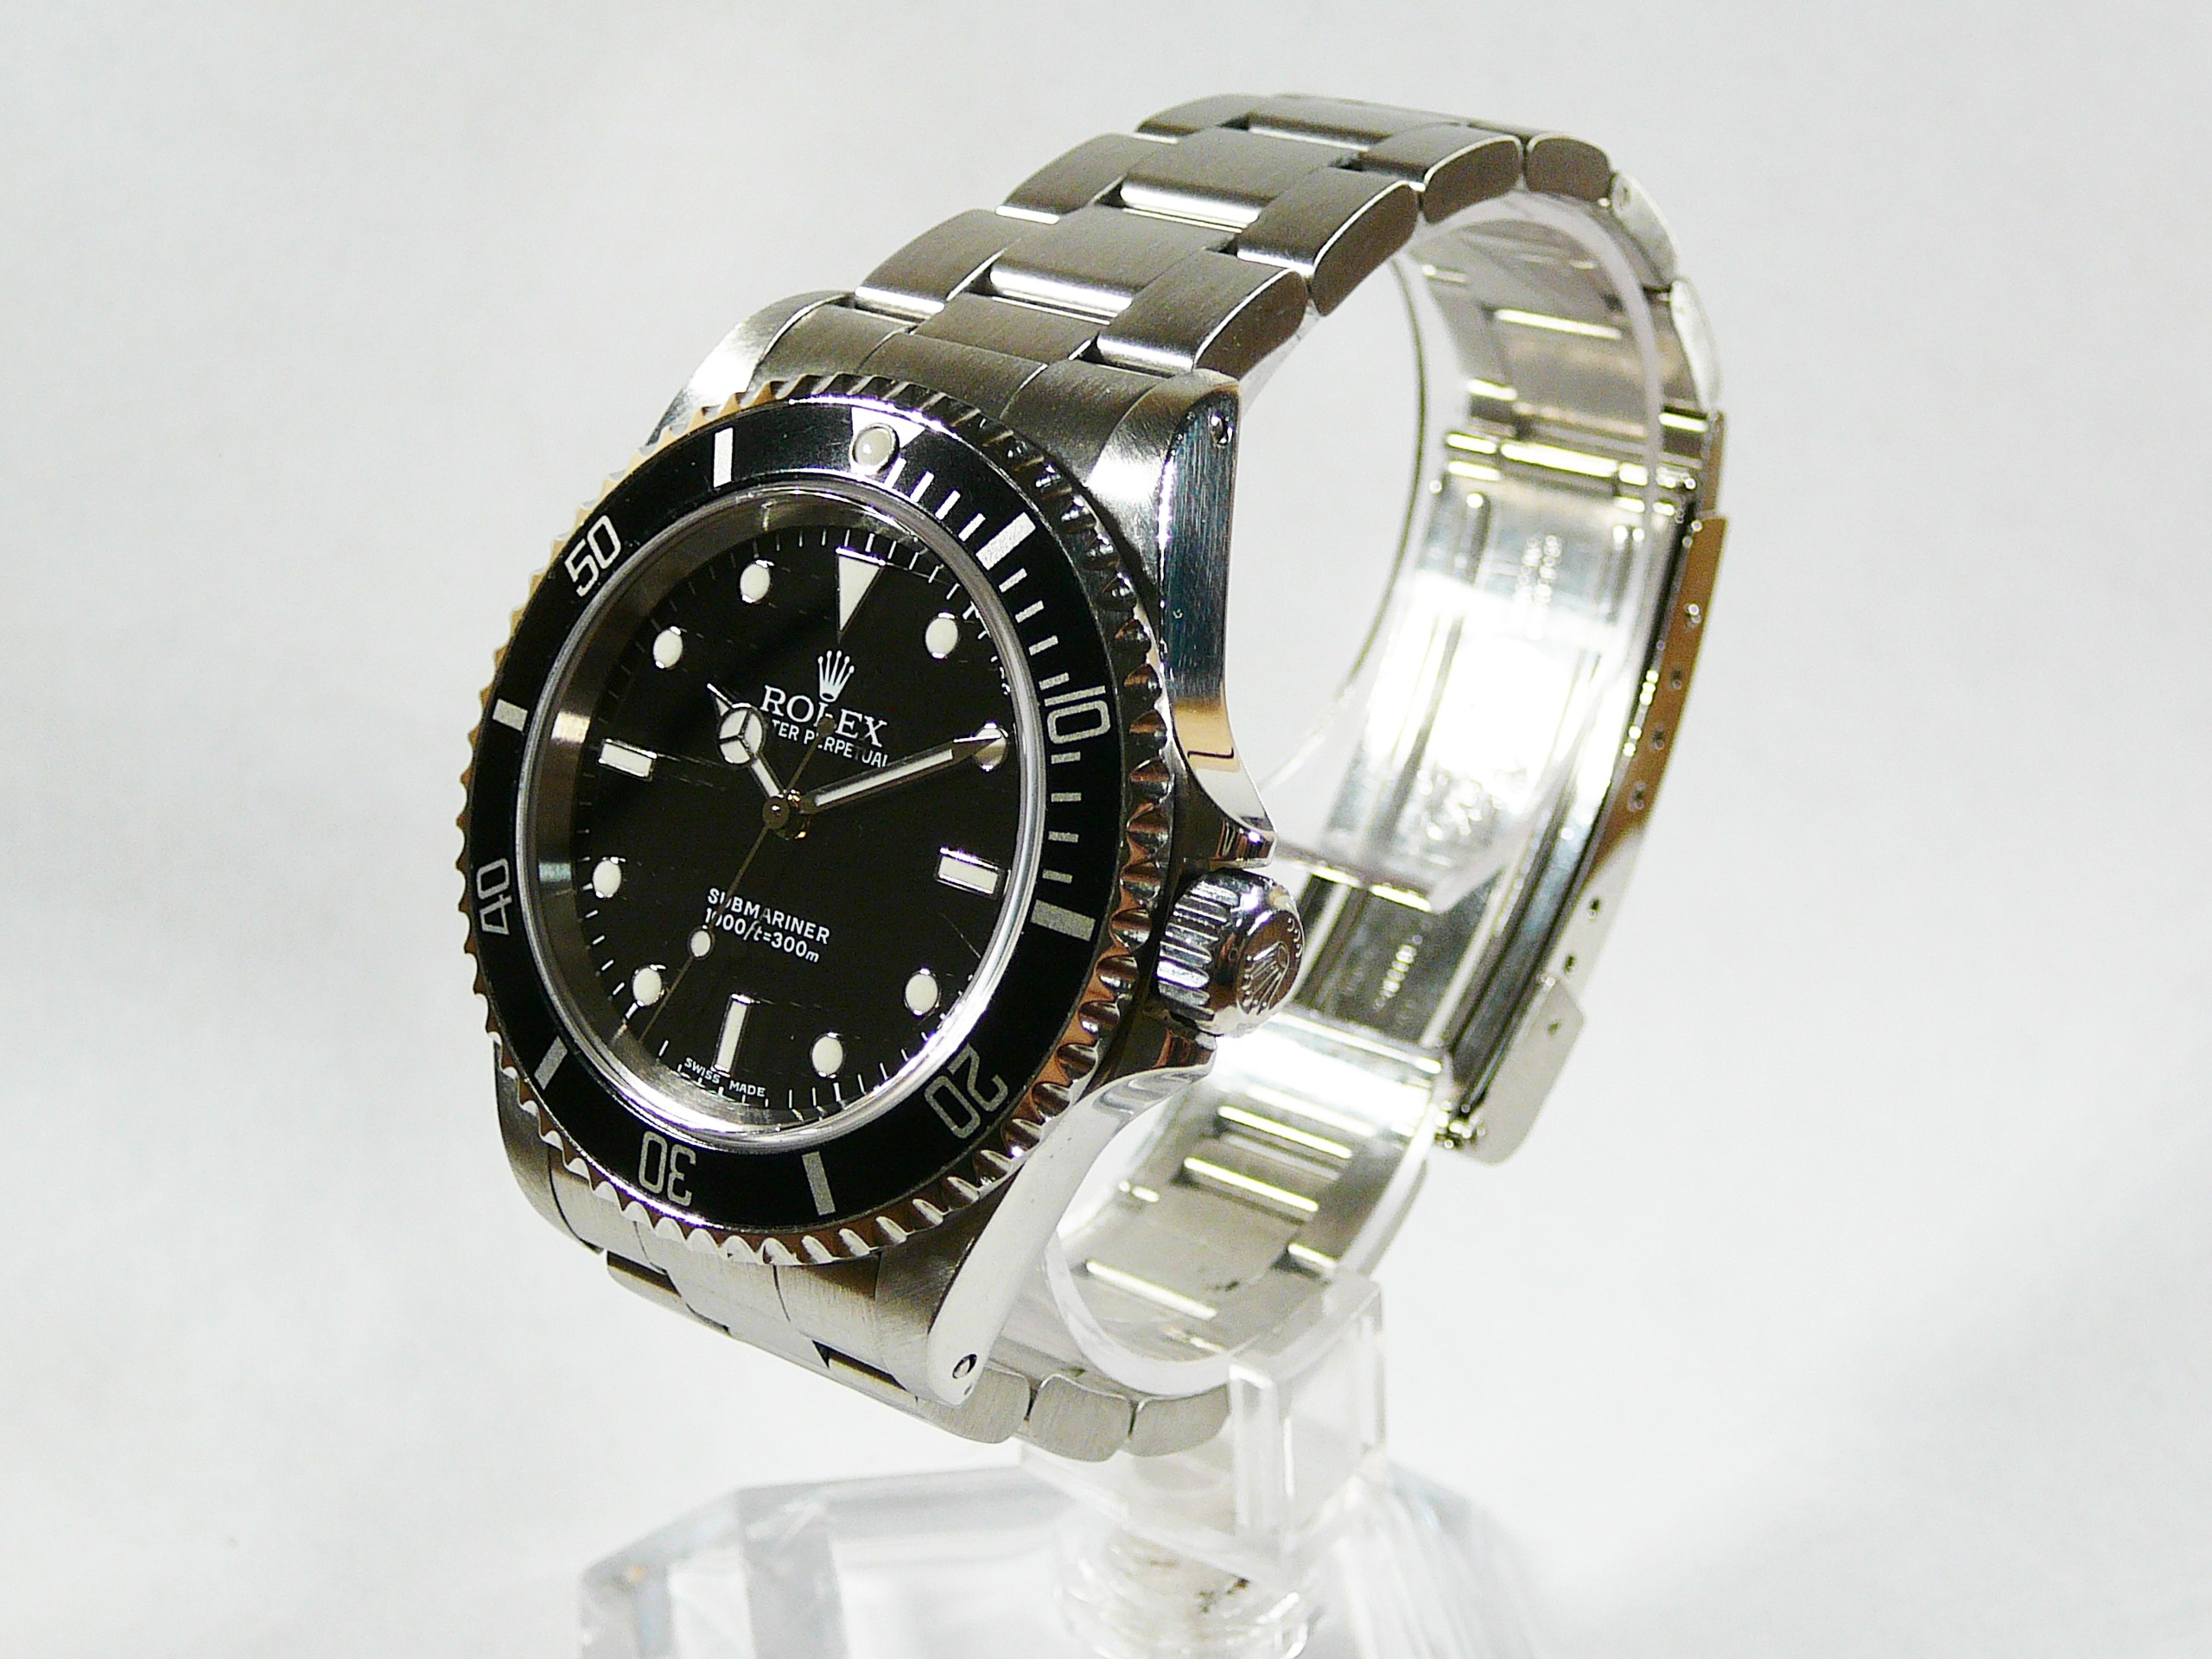 Gents Rolex Wrist Watch